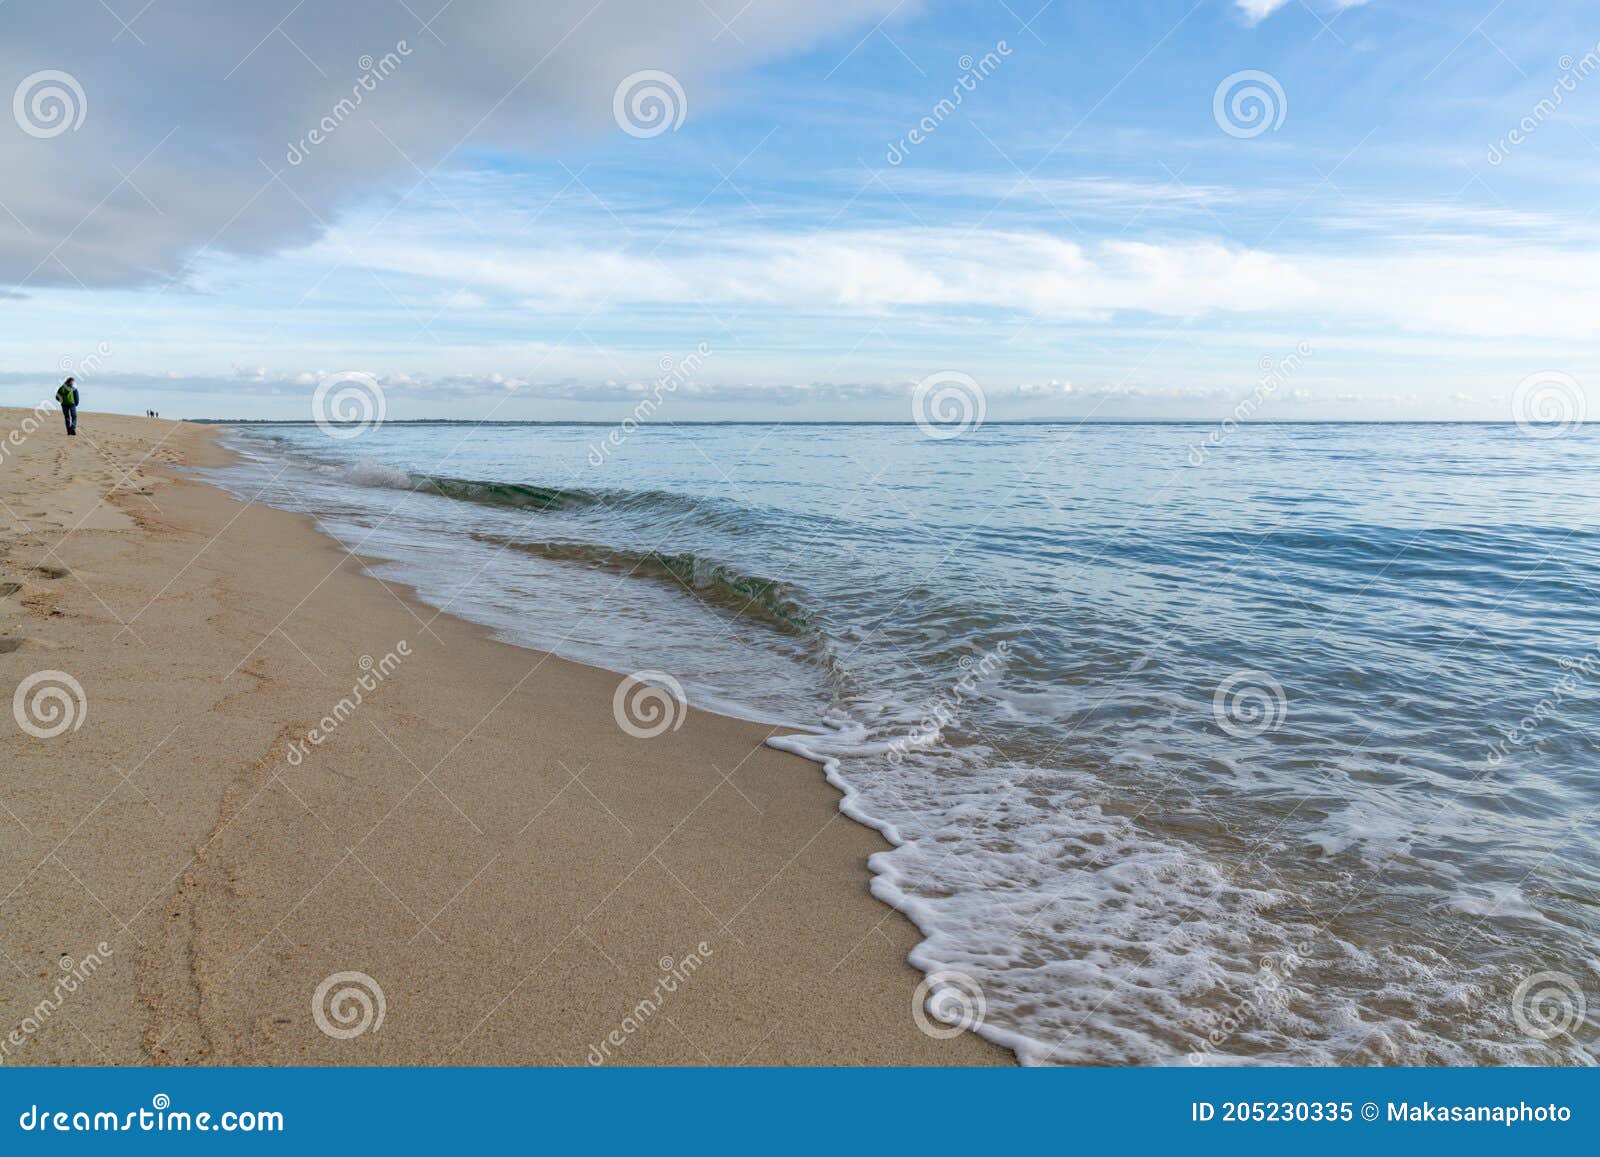 woman walks along an endless golden sand beach with gentle waves